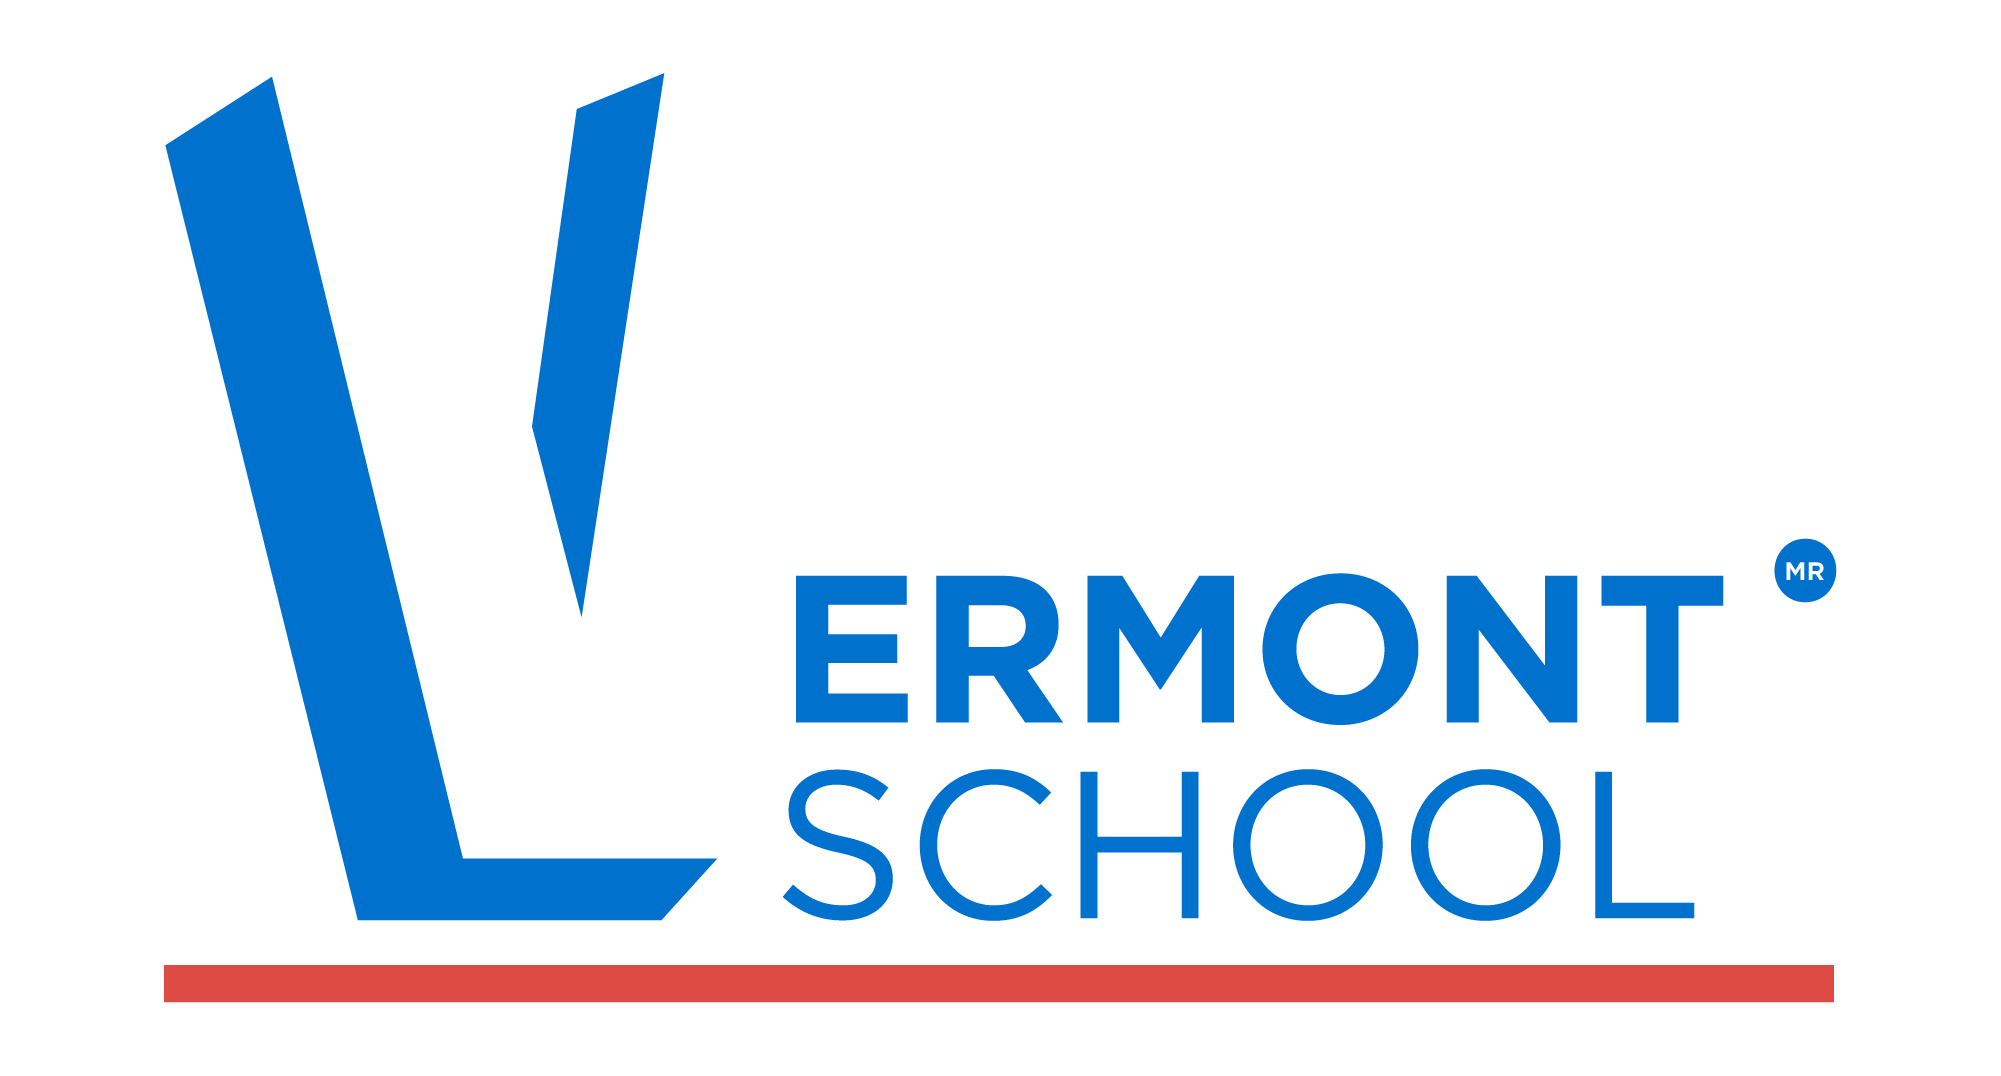 vermont school logo